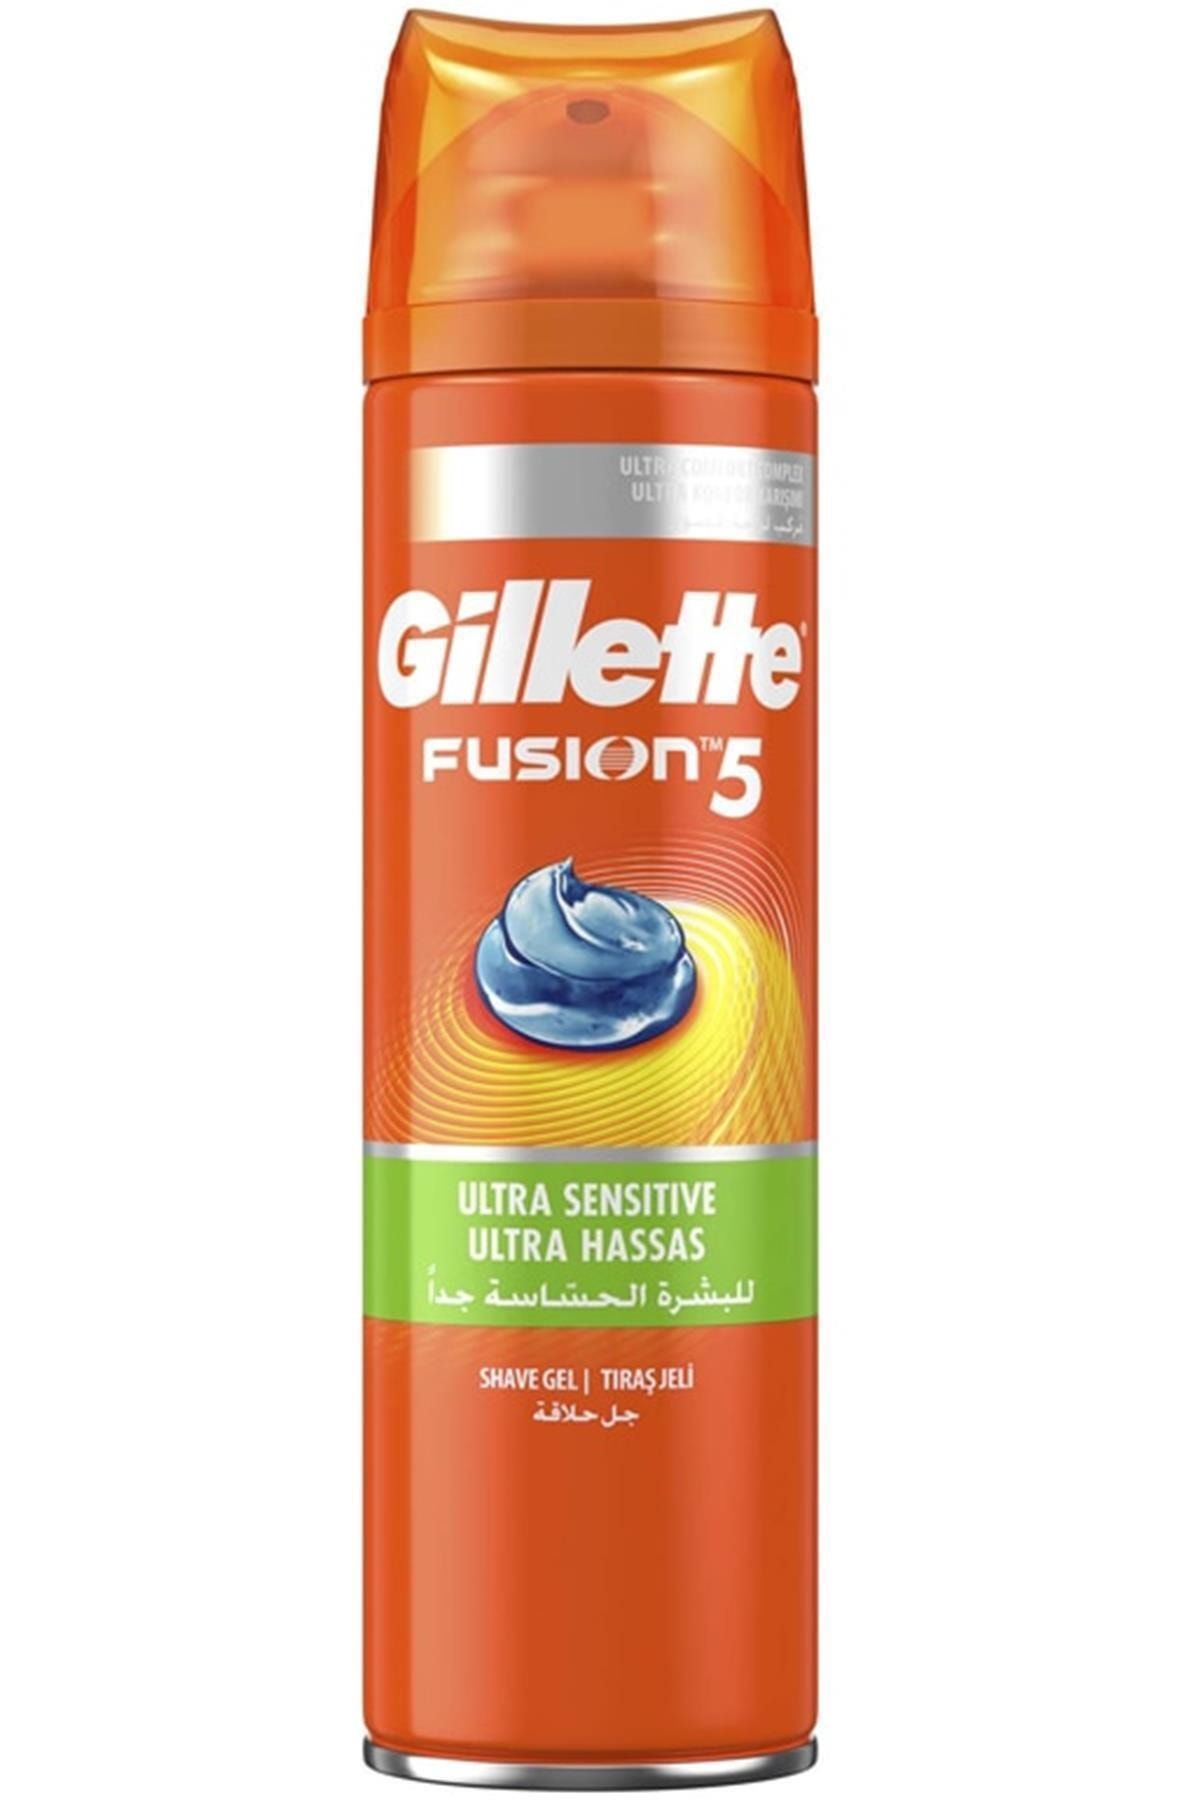 Gillette Marka: Fusion Tıraş Jeli Ultra Hassas 200 Ml Kategori: Tıraş Sonrası Ürün